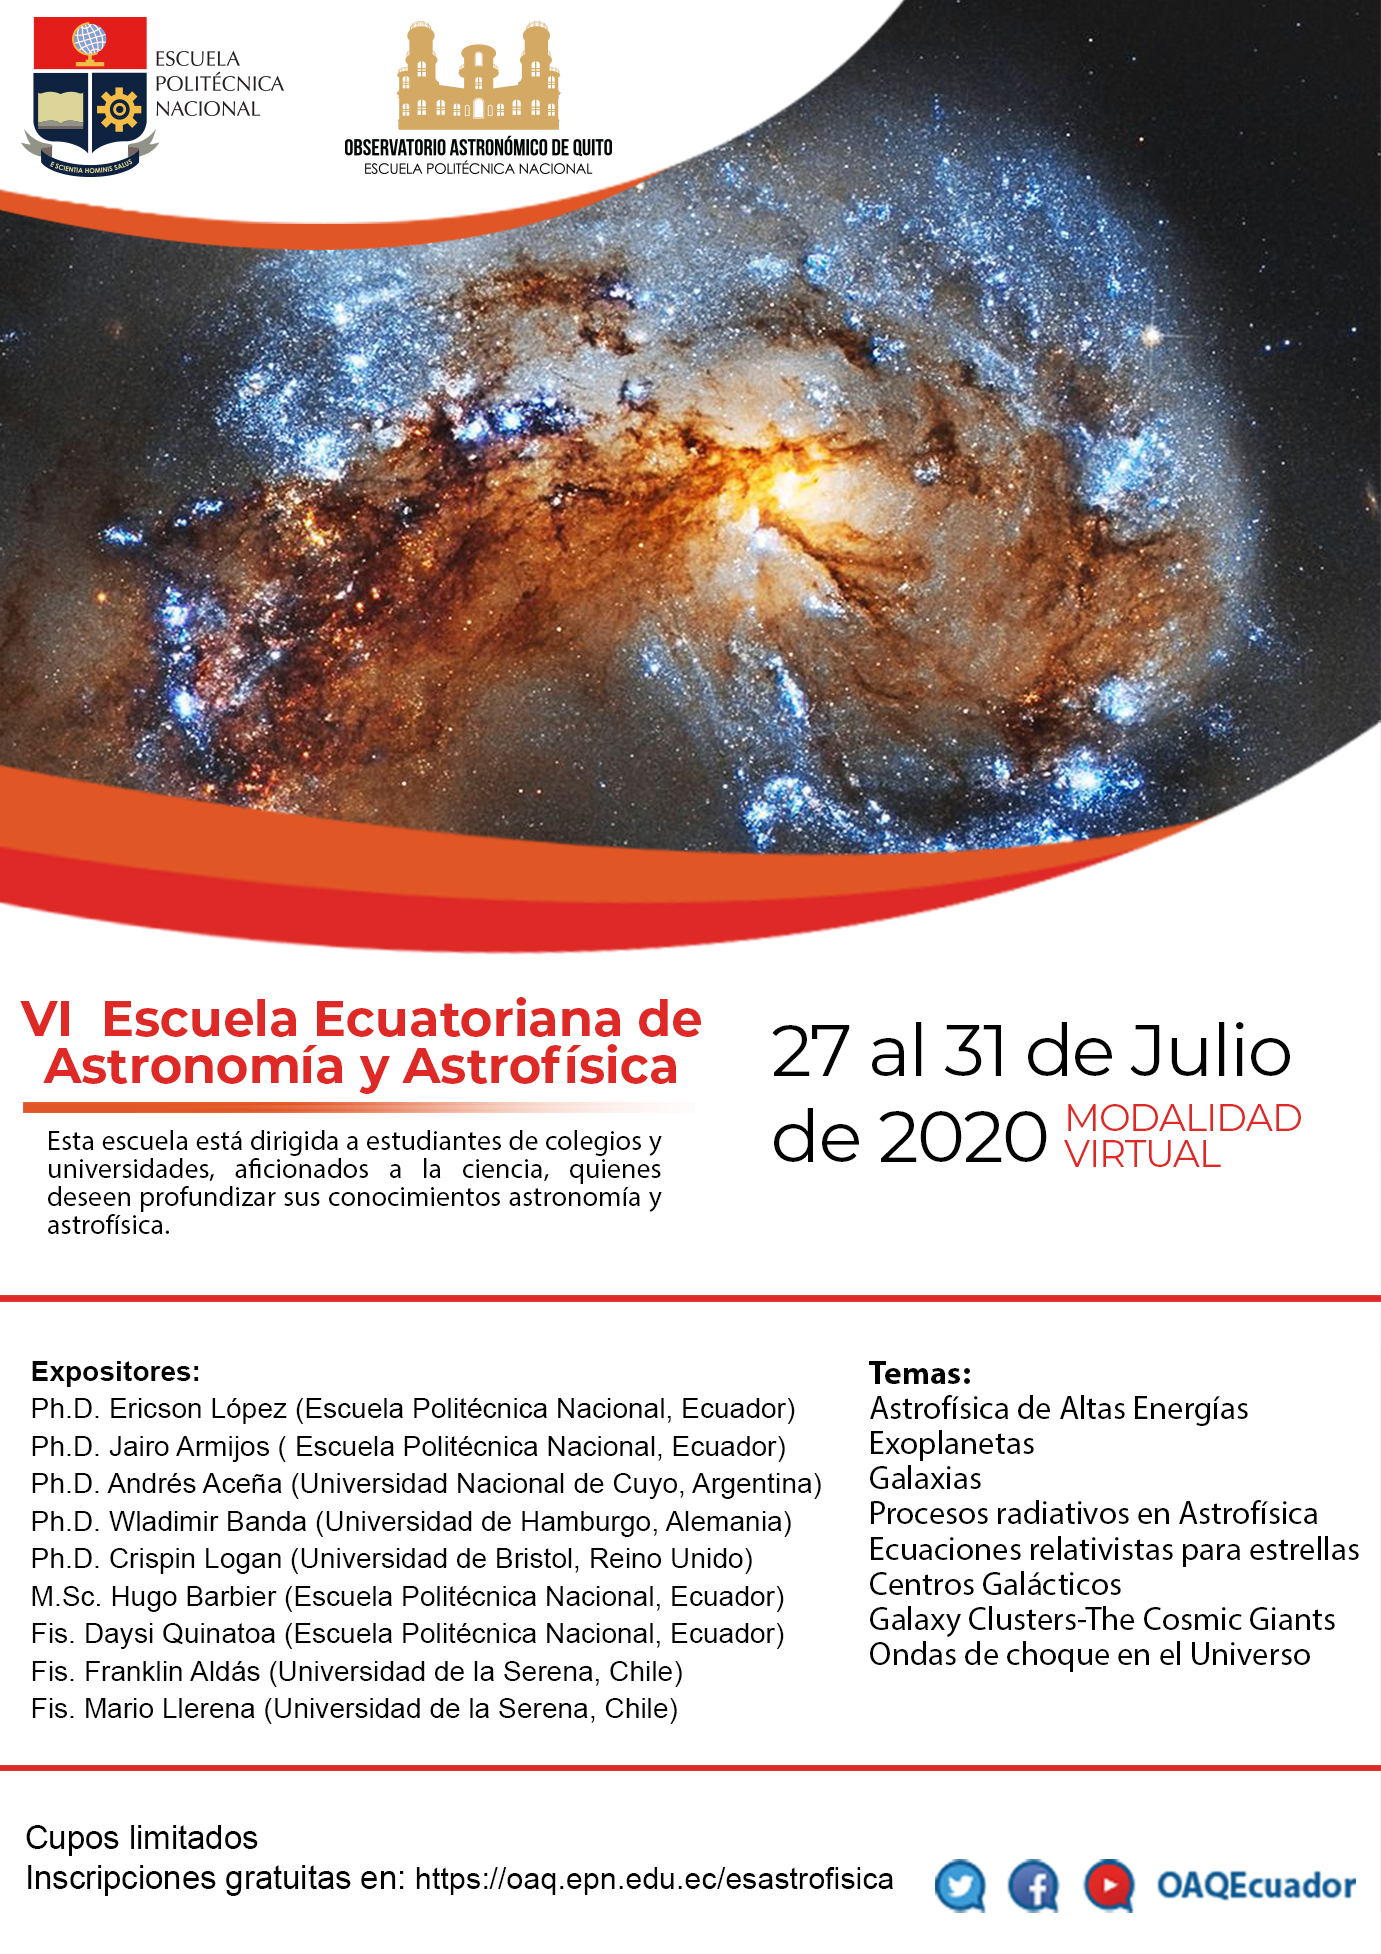 VI Escuela Ecuatoriana de Astronomía y Astrofísica